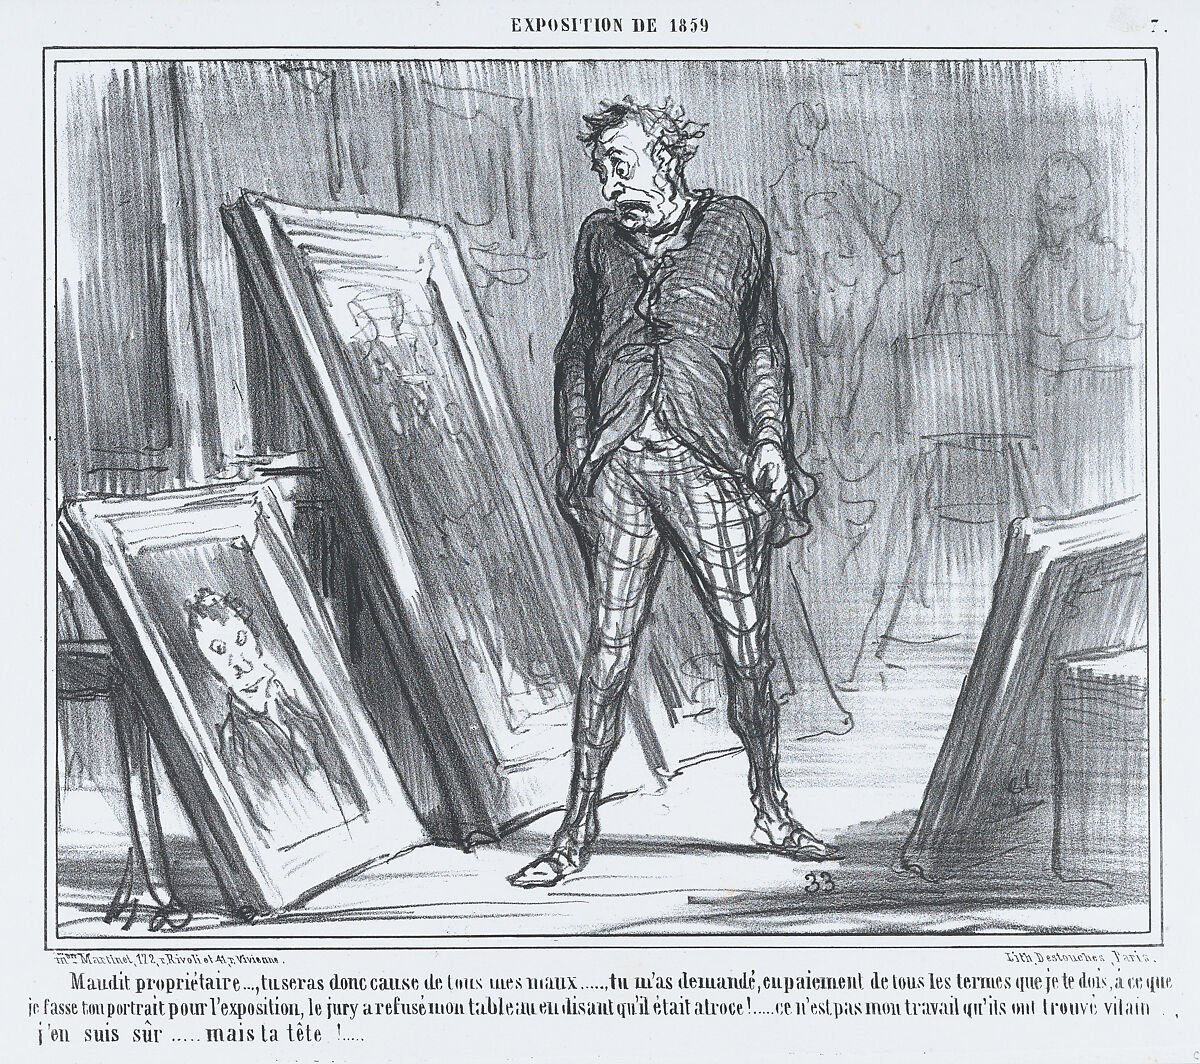 Maudit propriétaire..., tu seras donc cause de tous mes maux..., from L'Exposition de 1859, published in Le Charivari, April 26, 1859, Honoré Daumier (French, Marseilles 1808–1879 Valmondois), Lithograph; second state (Delteil) 